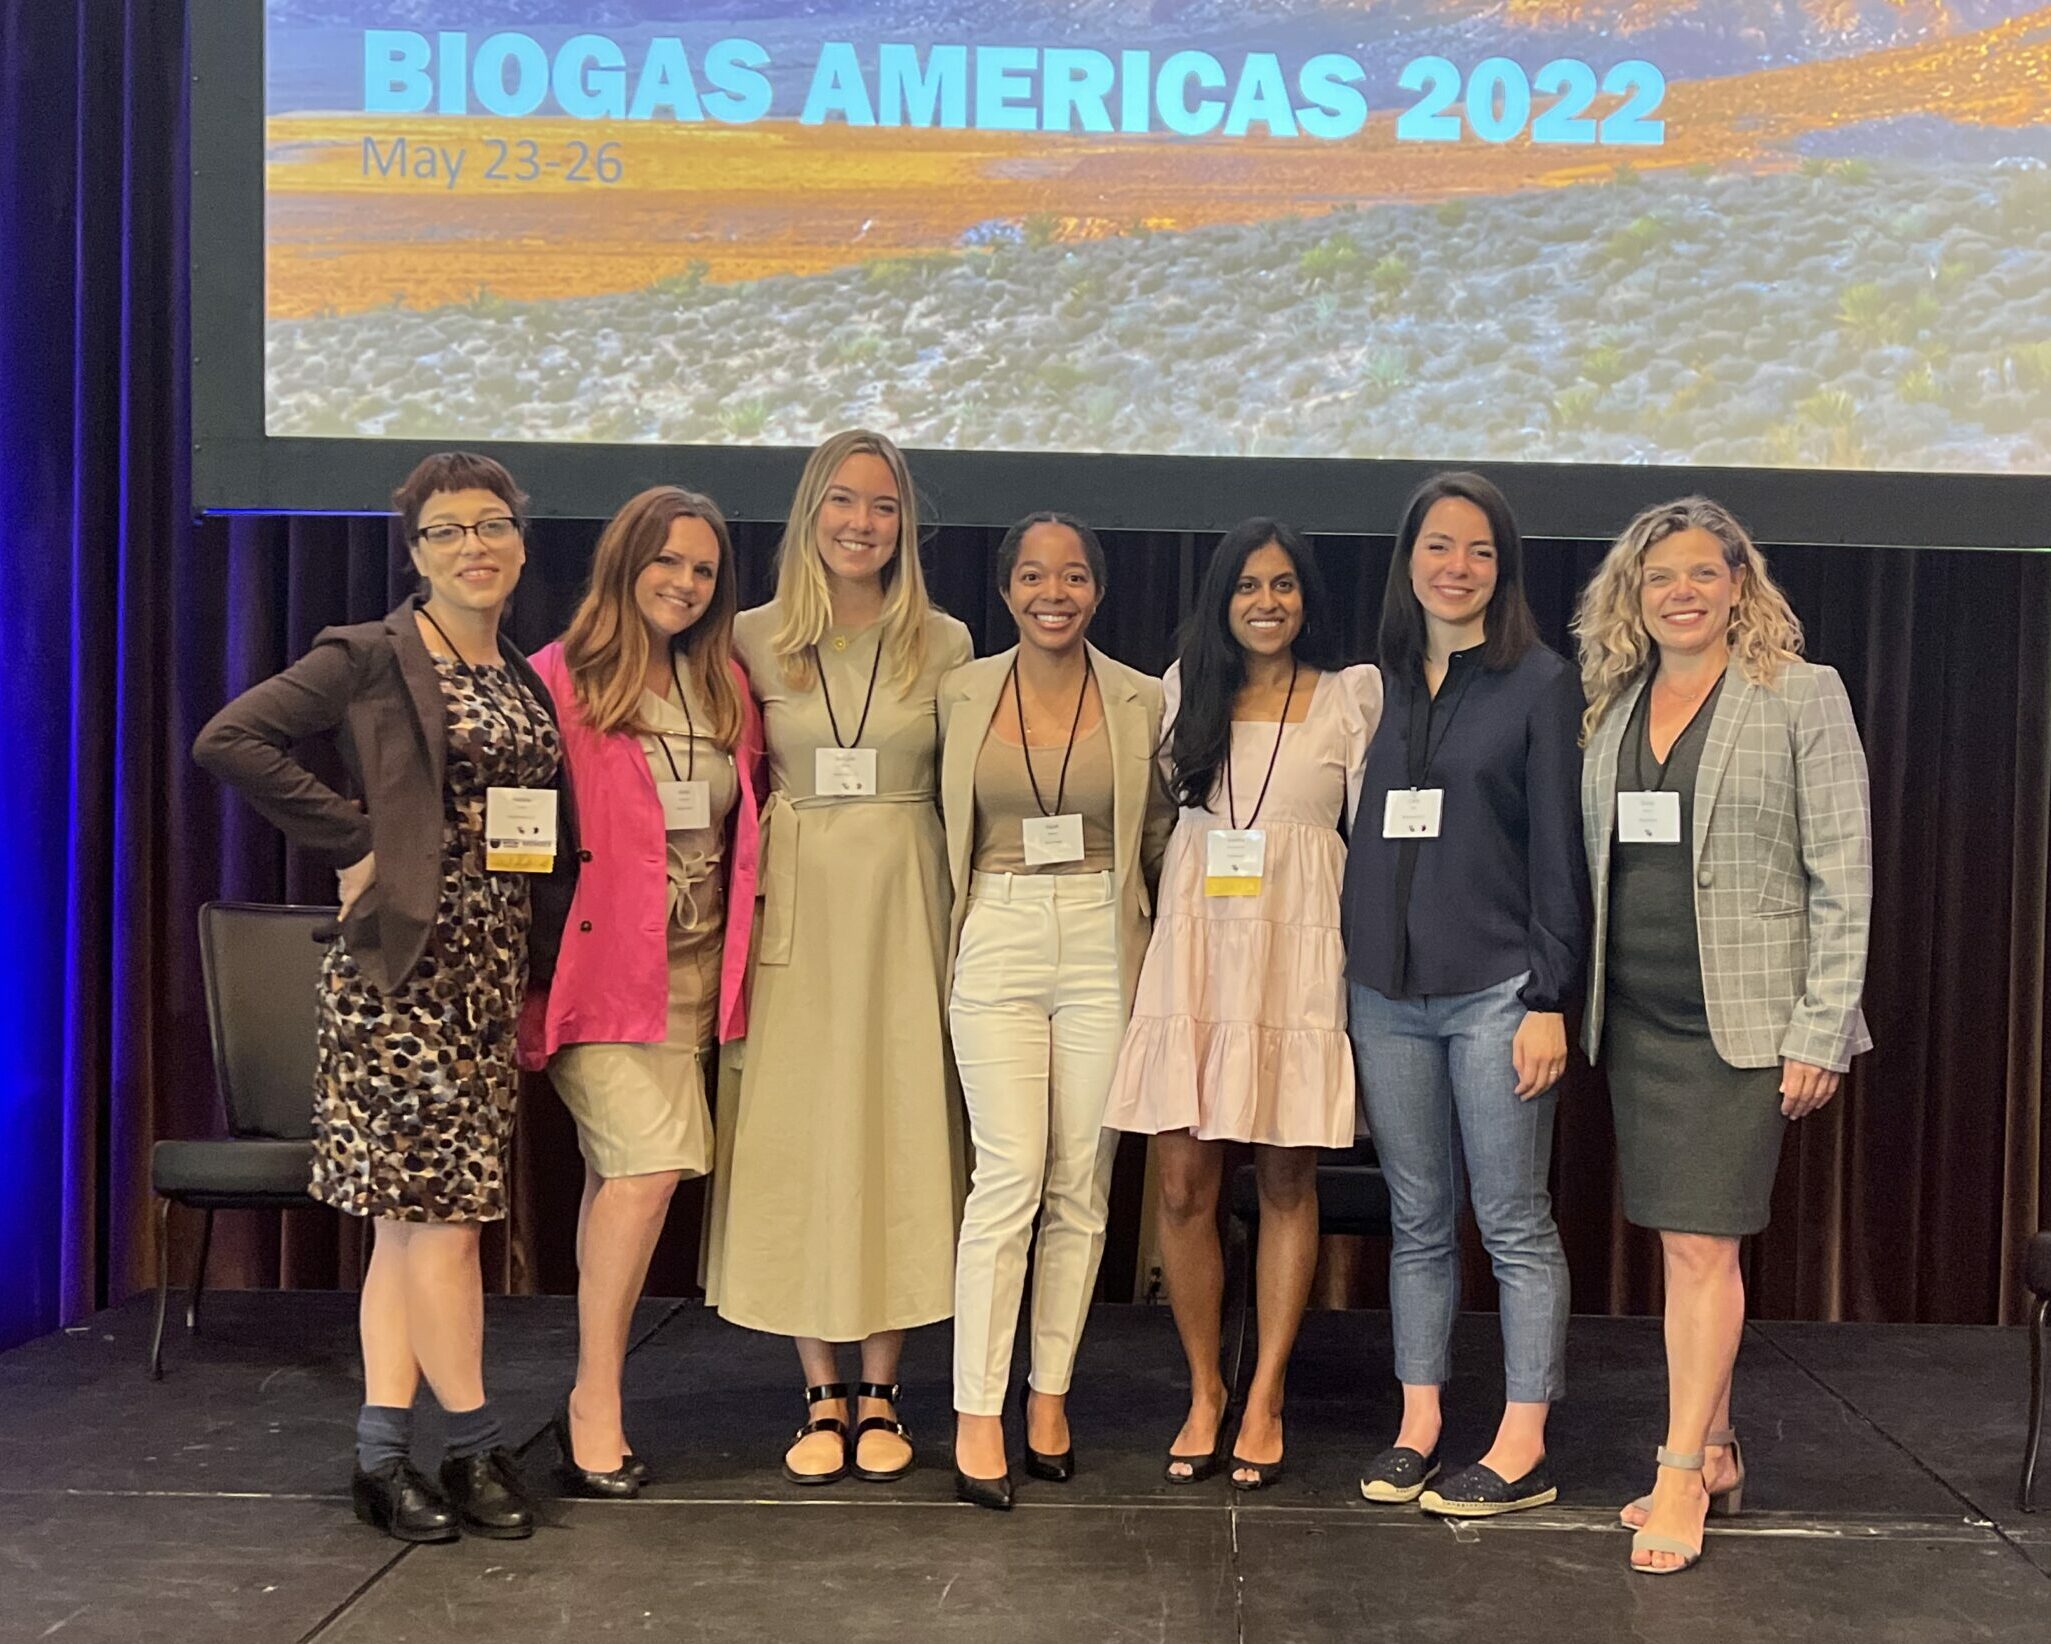 BioGas Americas 2022 team picture